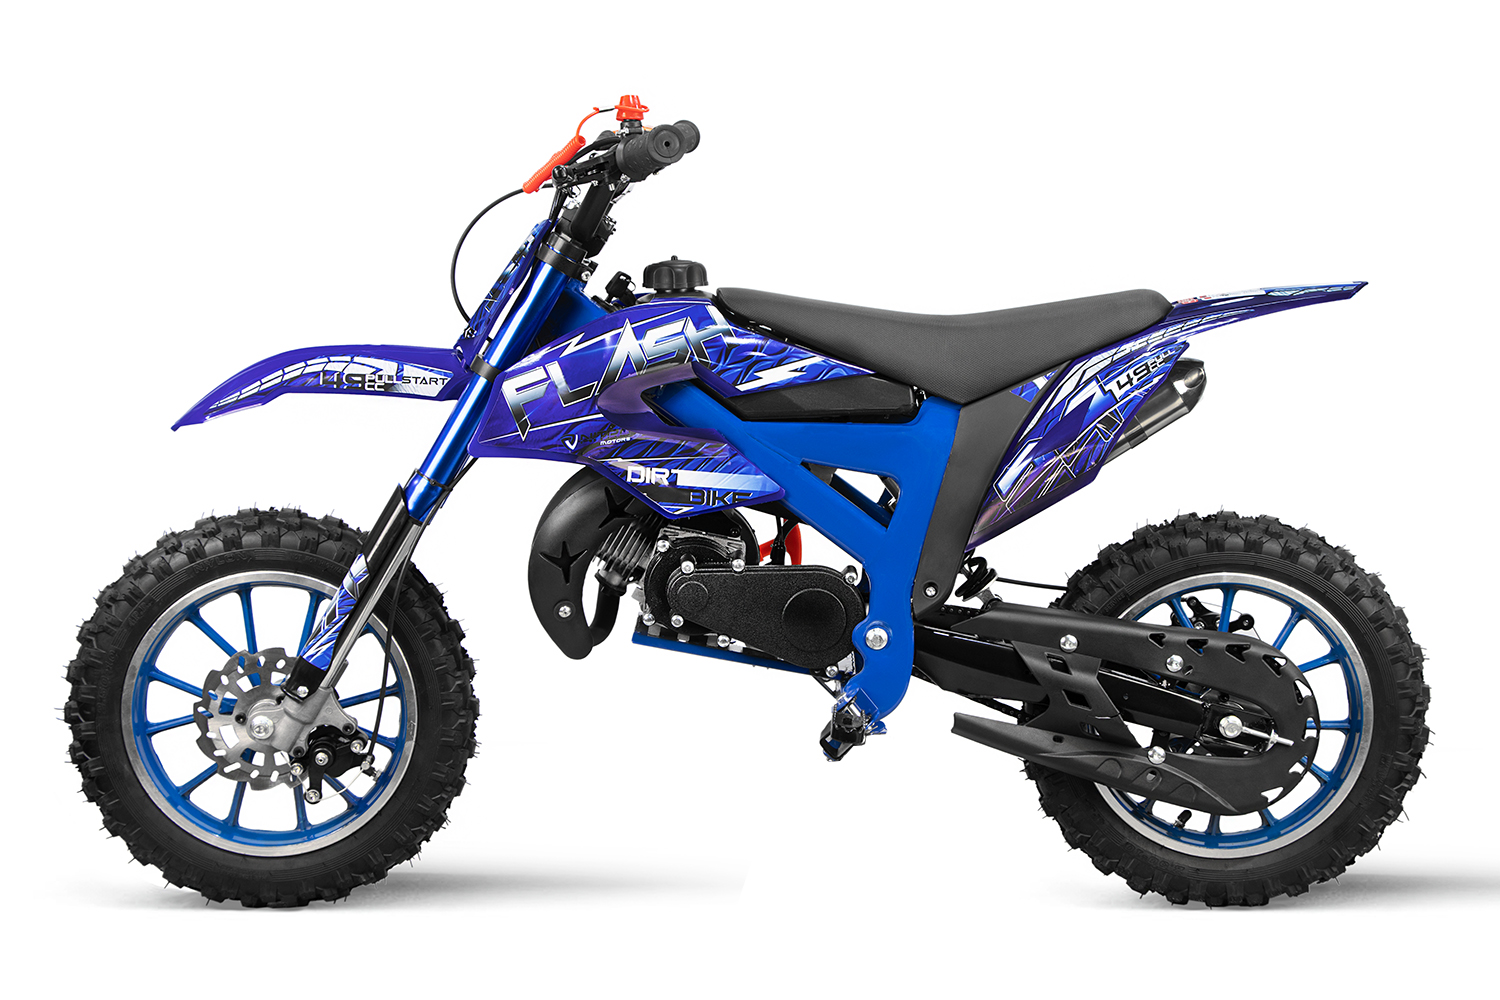 X-Moto Cross Bike ZR250R wassergekühlt - Motocross Kindermotorrad